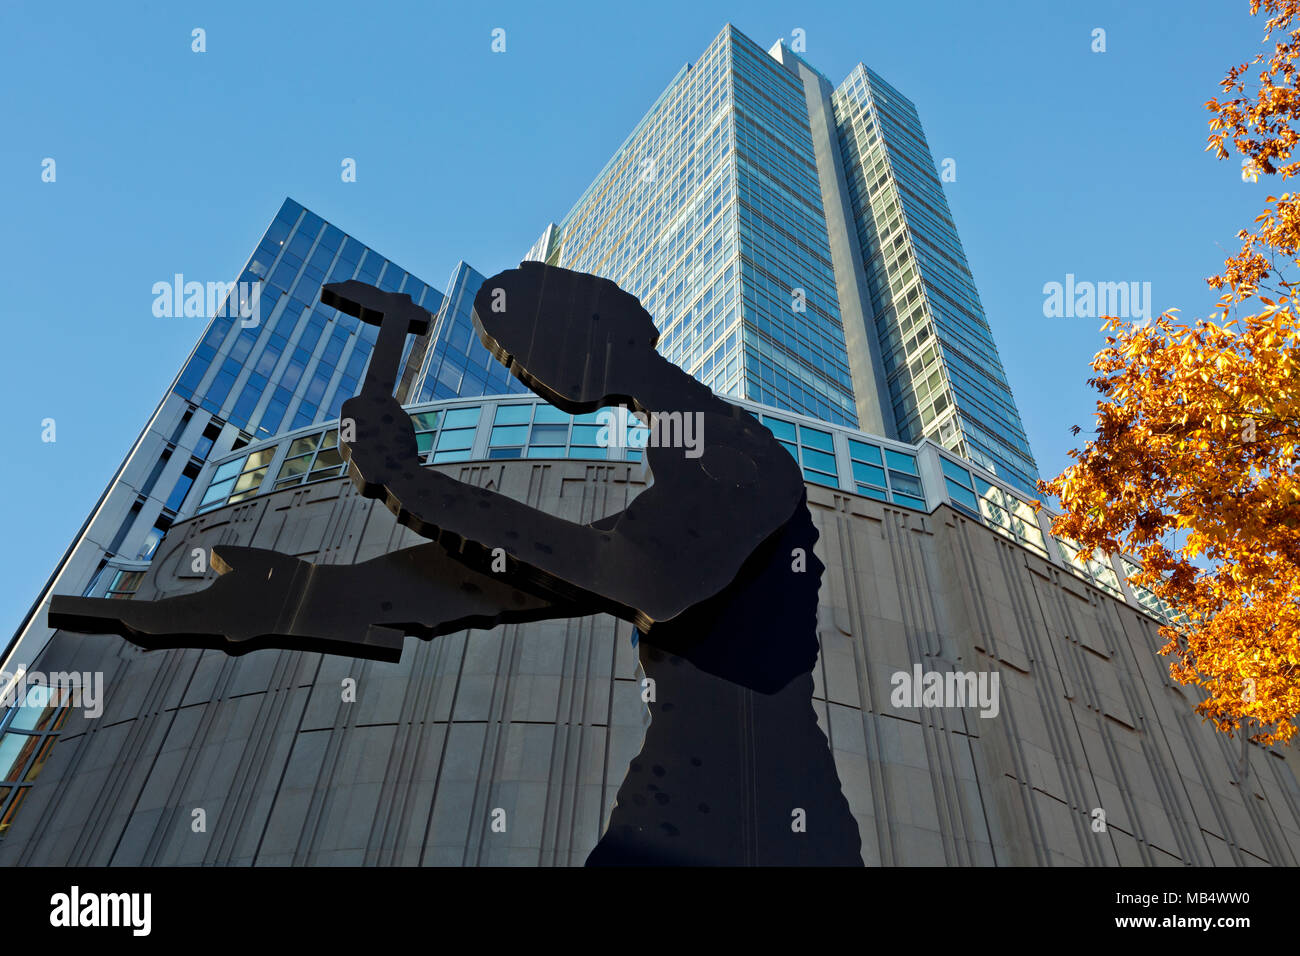 WA15048-00...WASHINGTON - l'enorme scultura dell'uomo martellante situata all'esterno del Seattle Art Museum nel centro di Seattle. 2017 Foto Stock